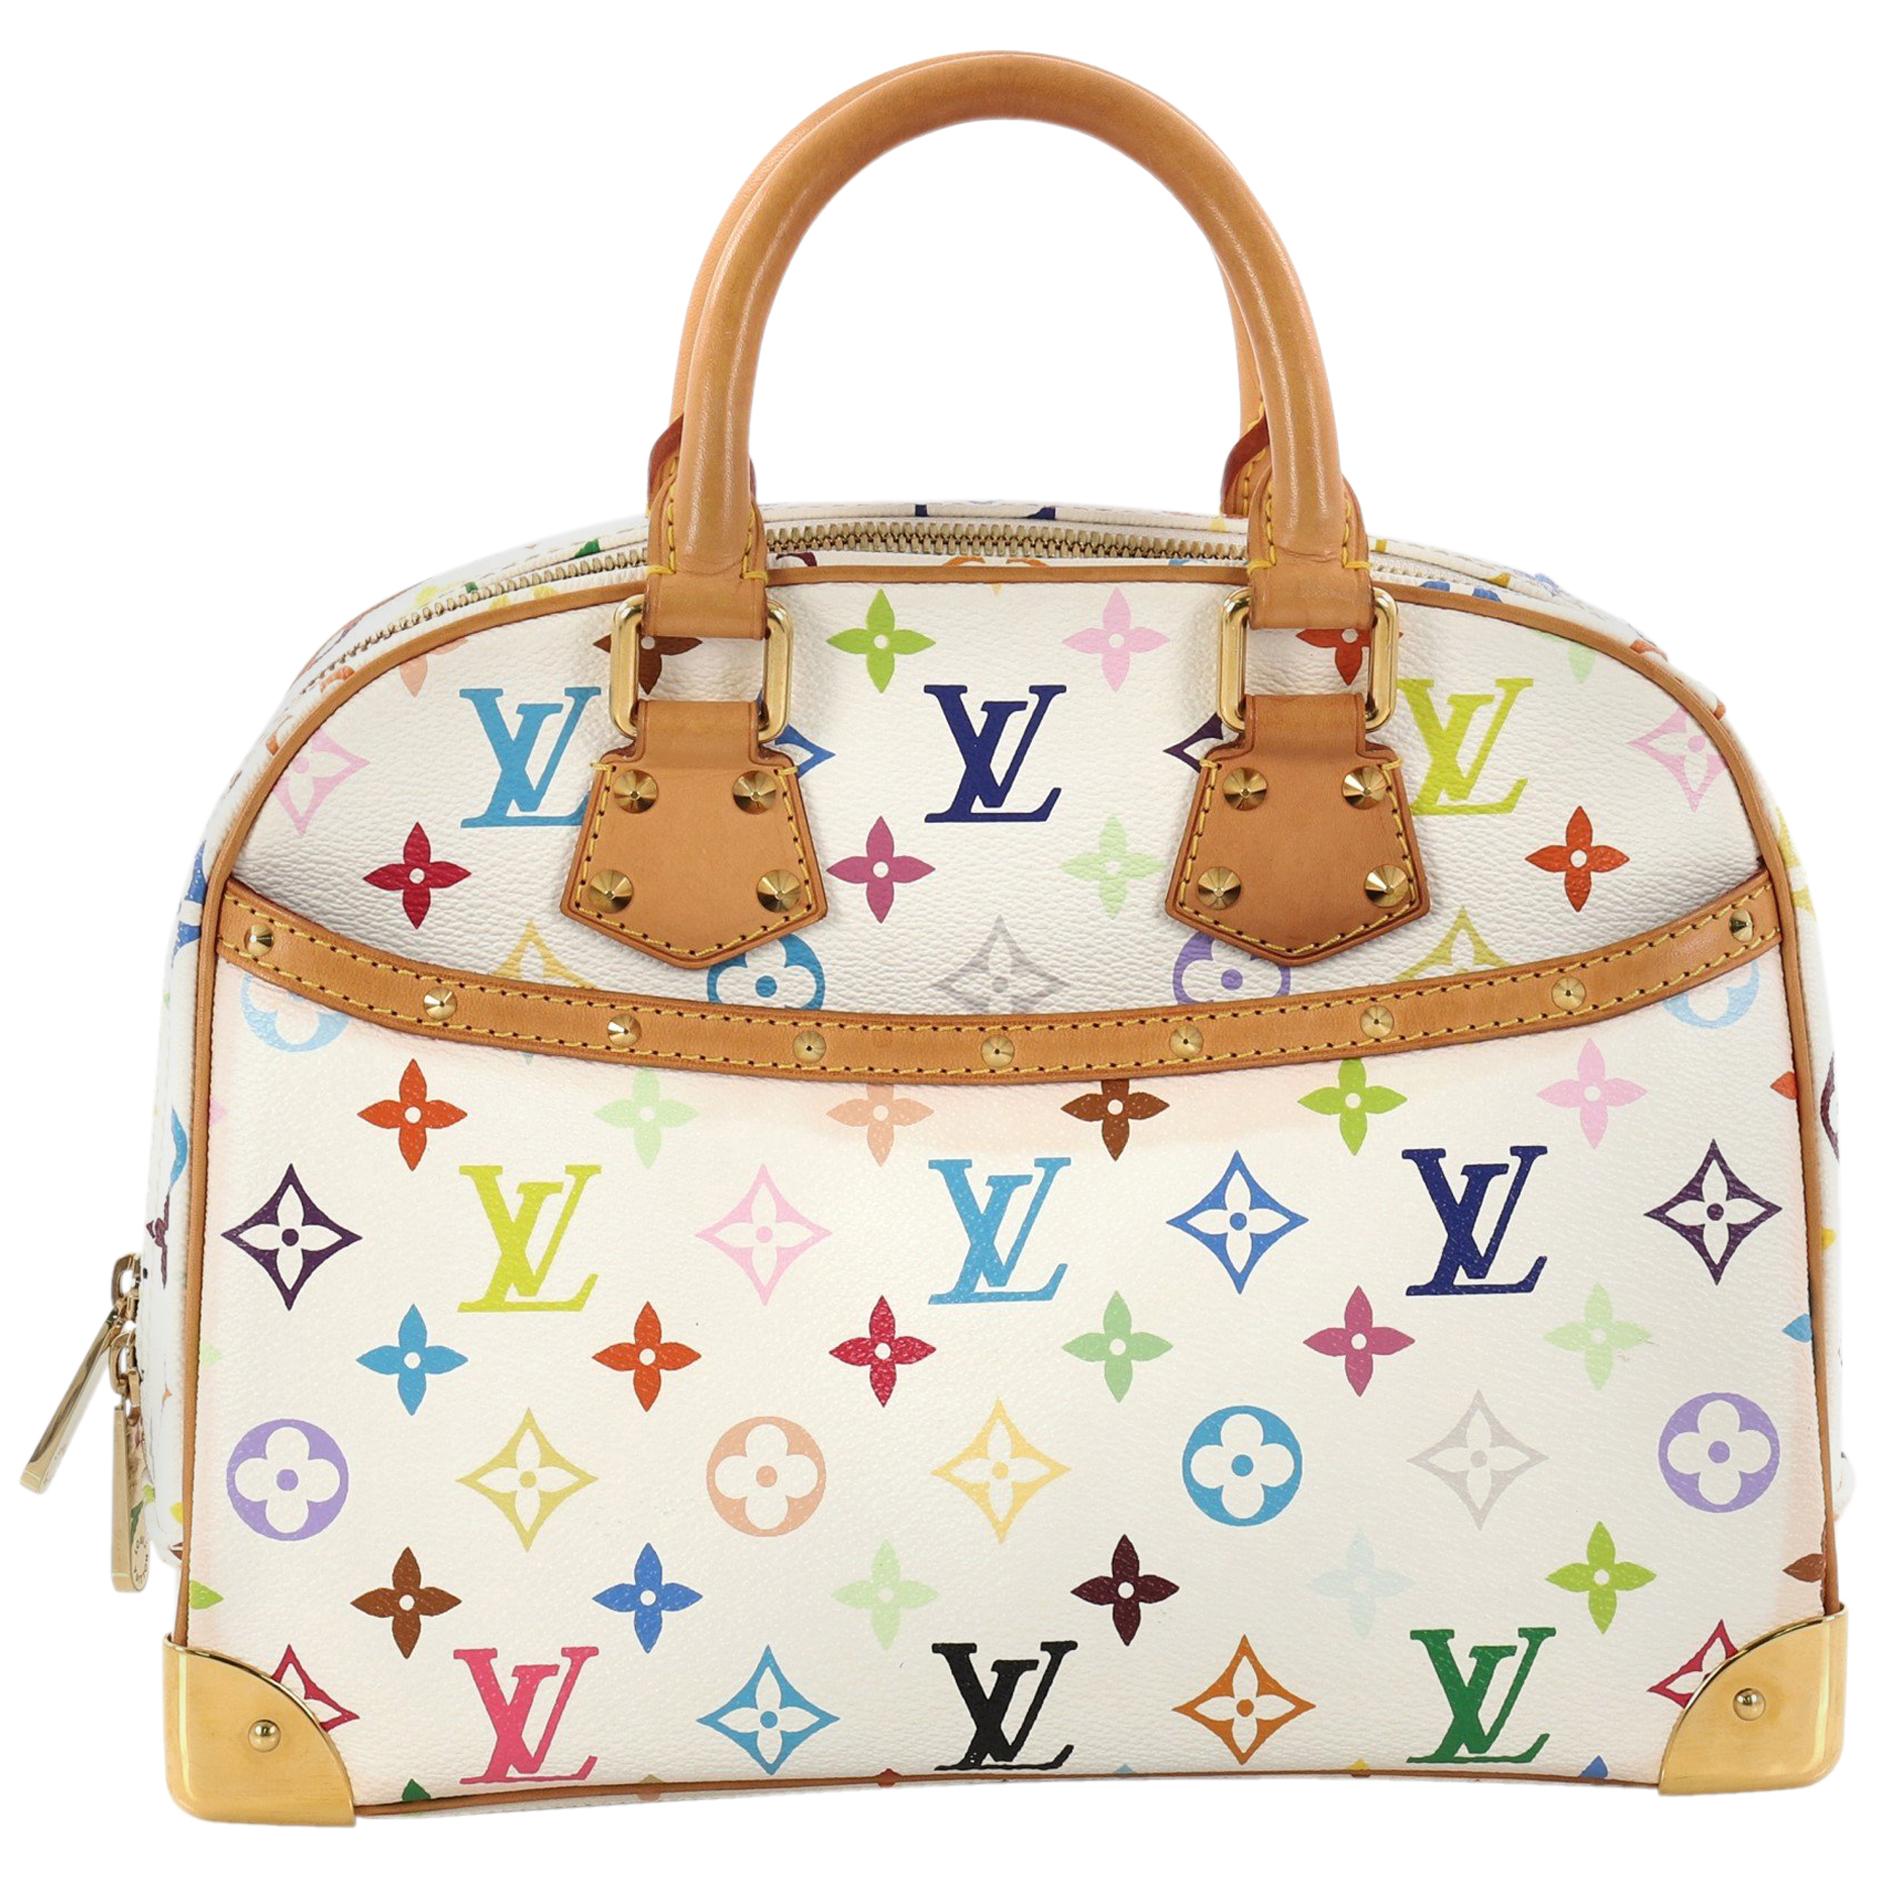  Louis Vuitton Trouville Handbag Monogram Multicolor i